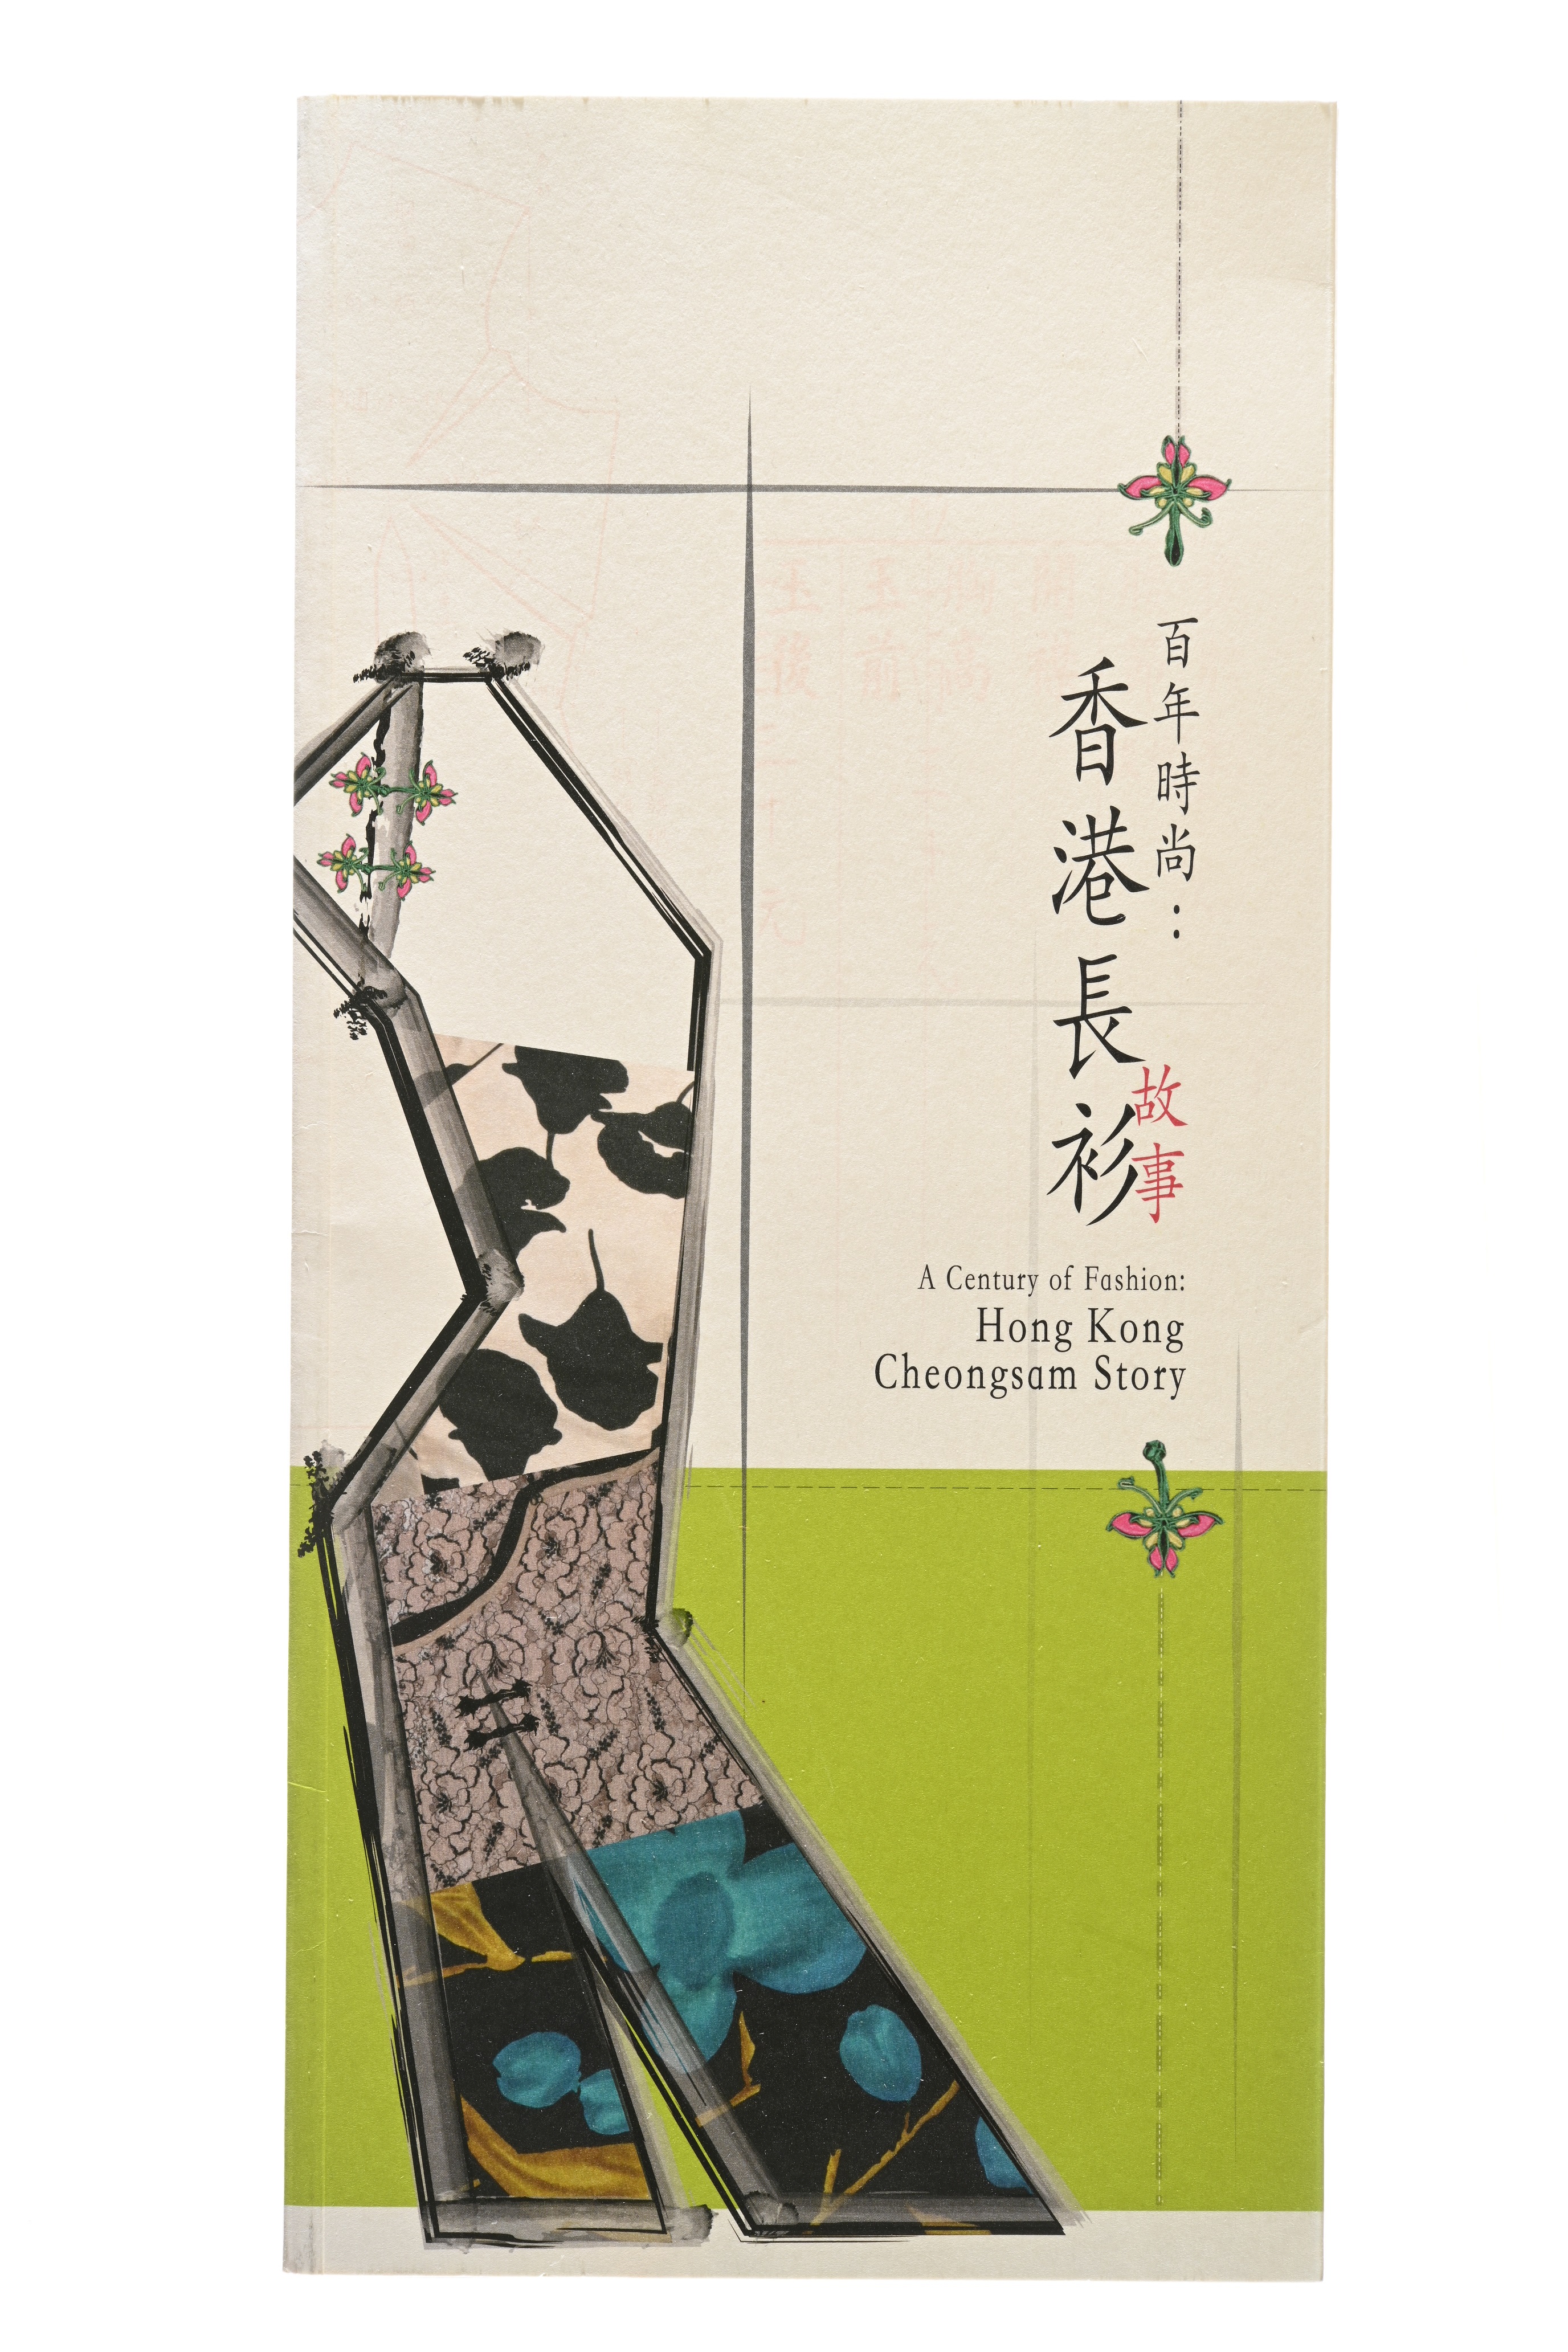 《百年時尚：香港長衫故事》展覽圖錄